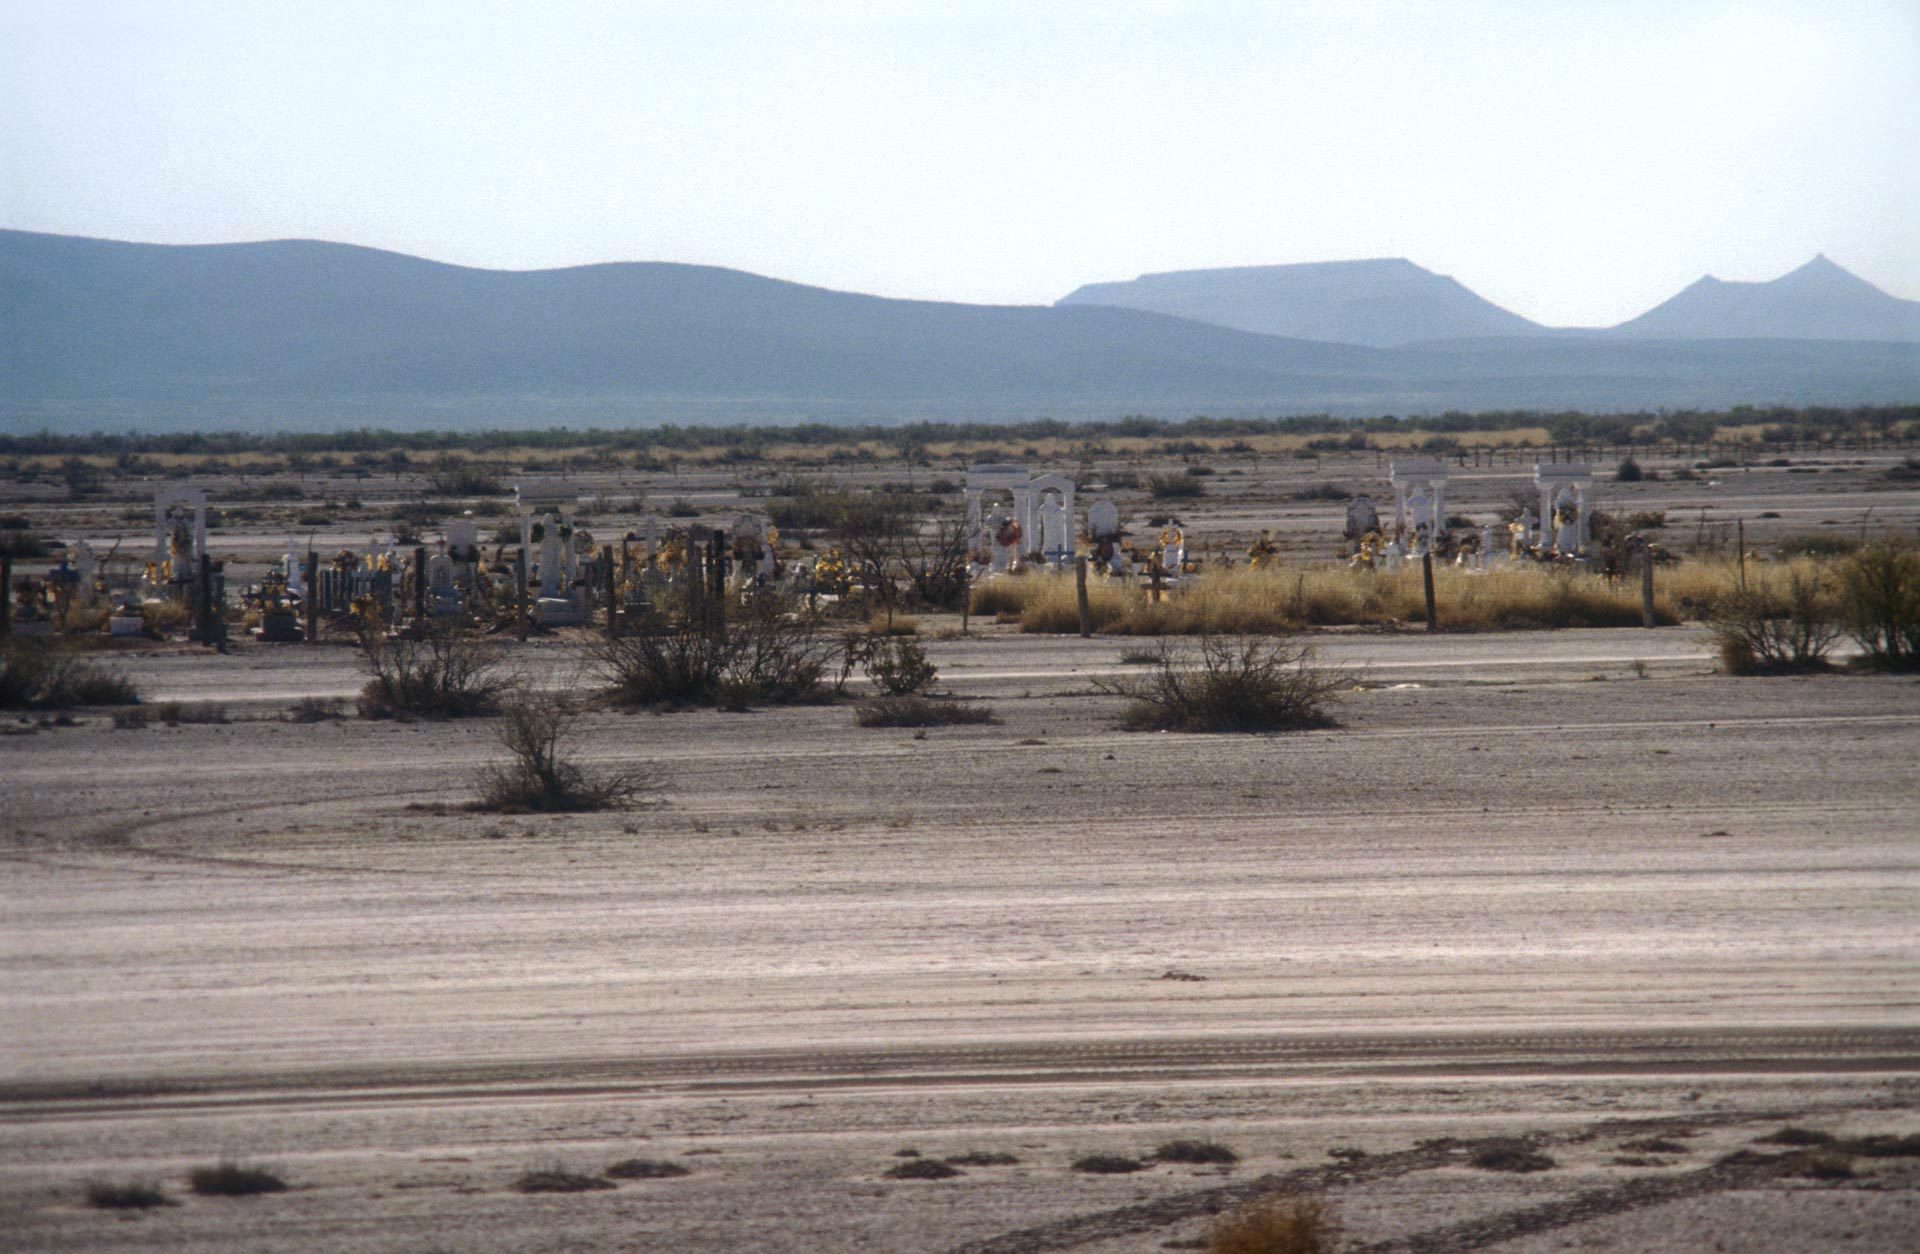 Friedhof in der Wüste – Cemetery in the desert